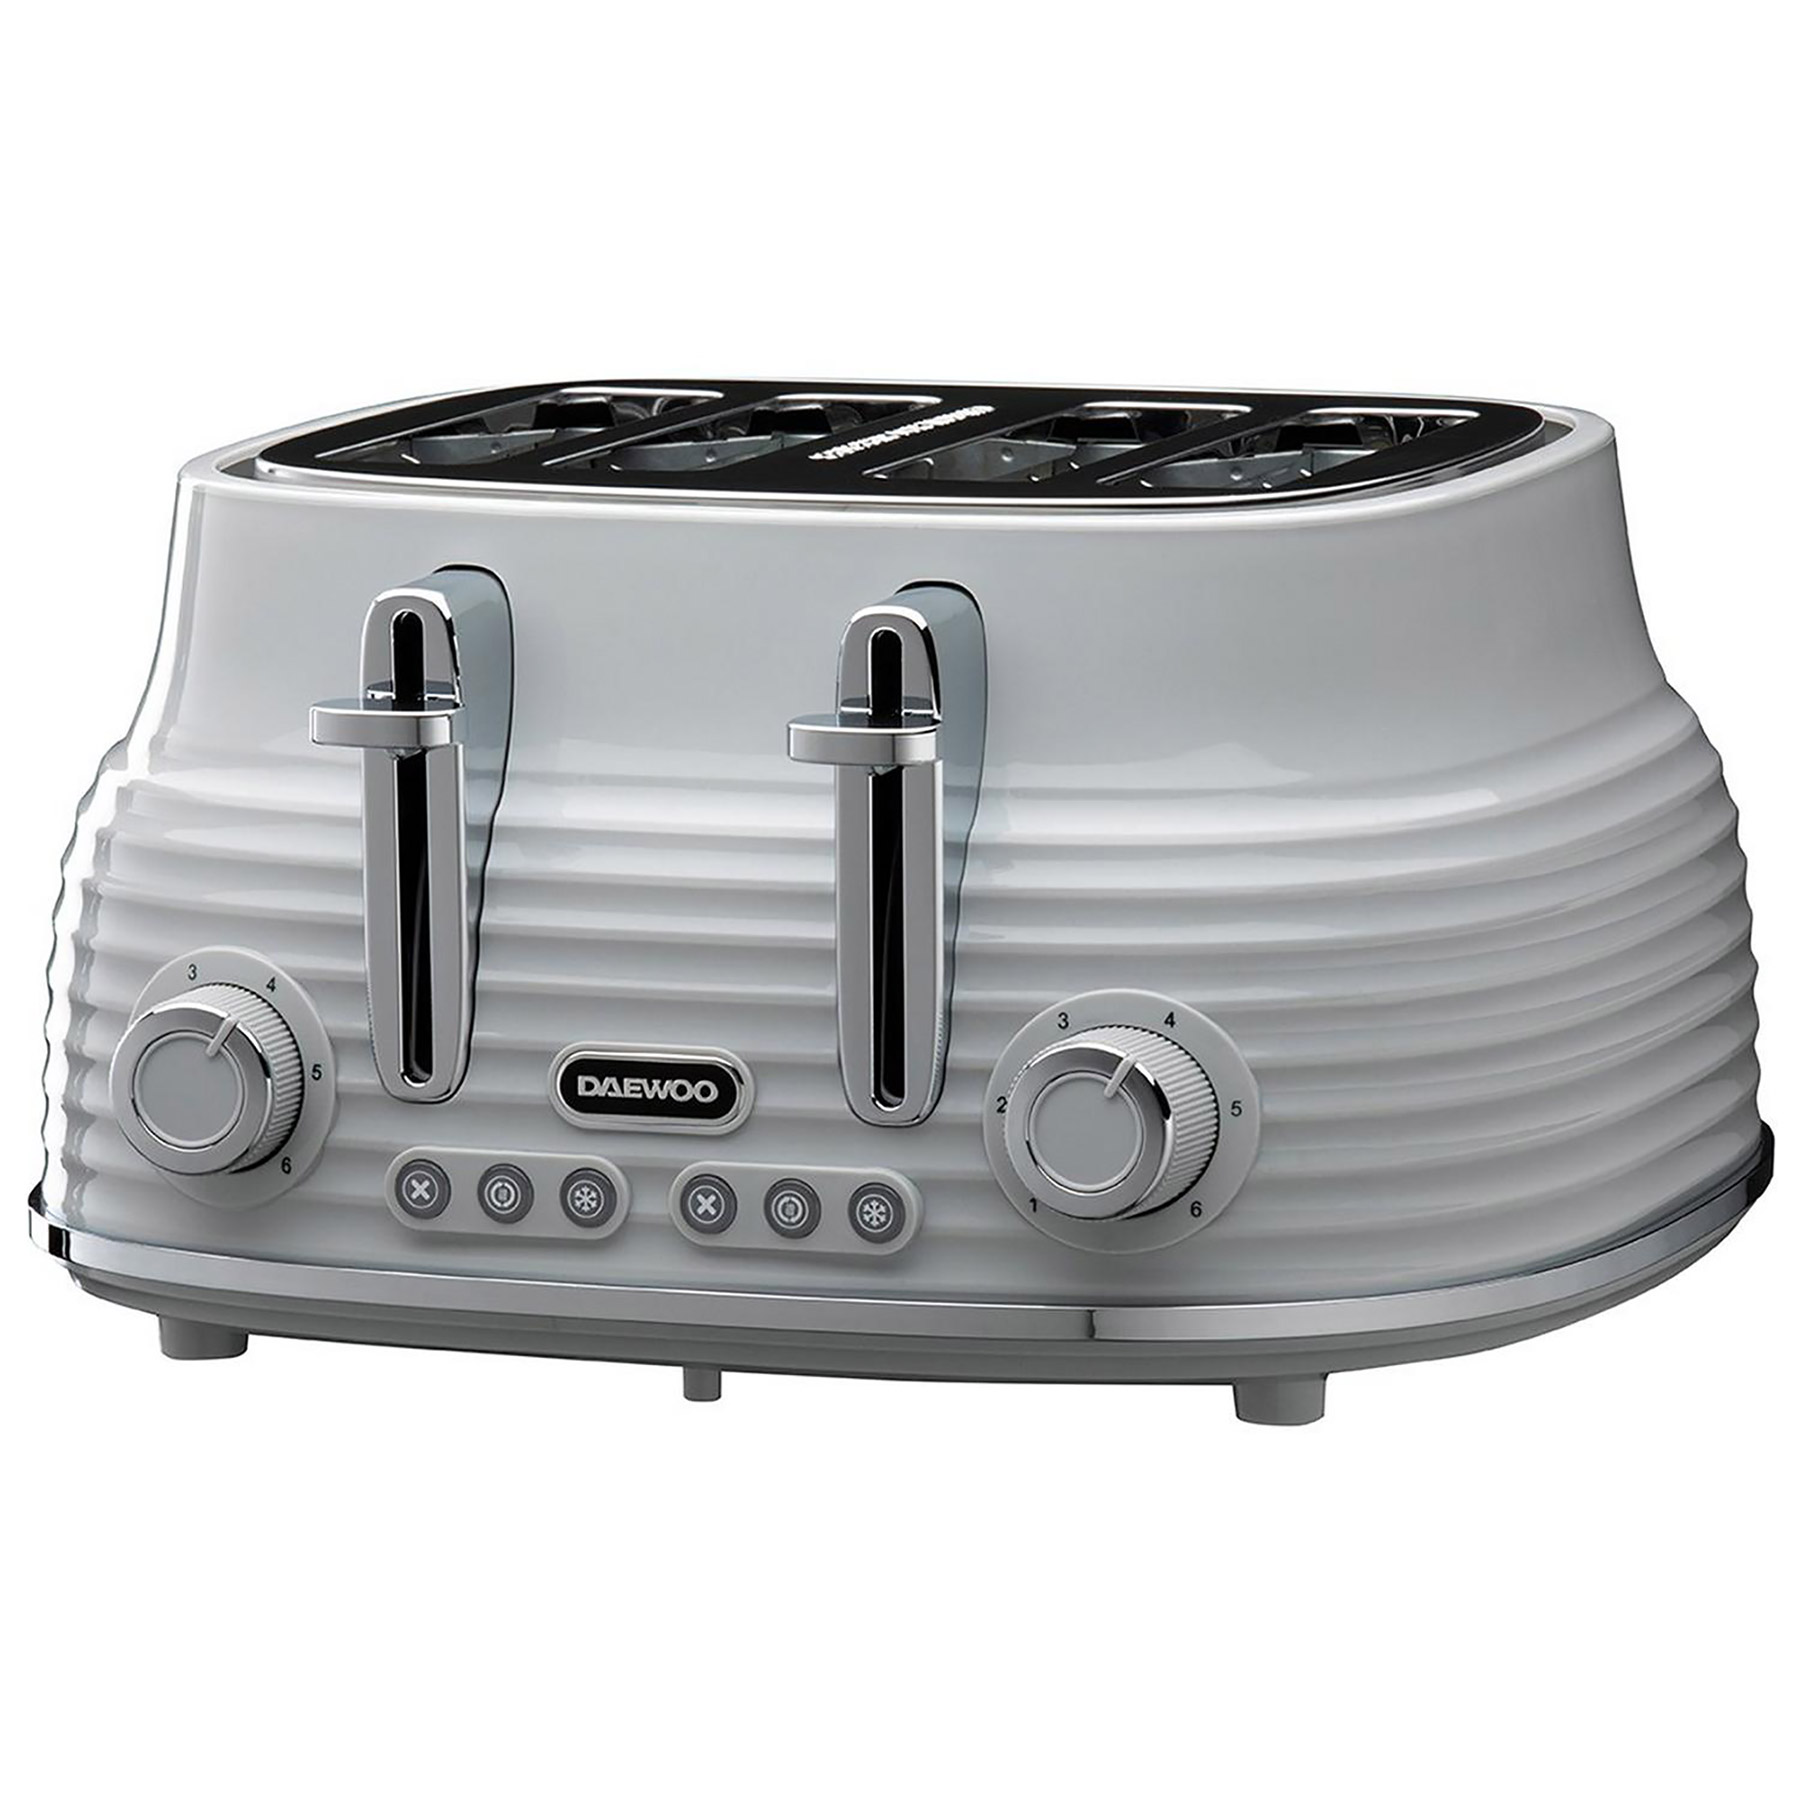 Image of Daewoo SDA2484GE Sienna 4 Slice Toaster in Grey